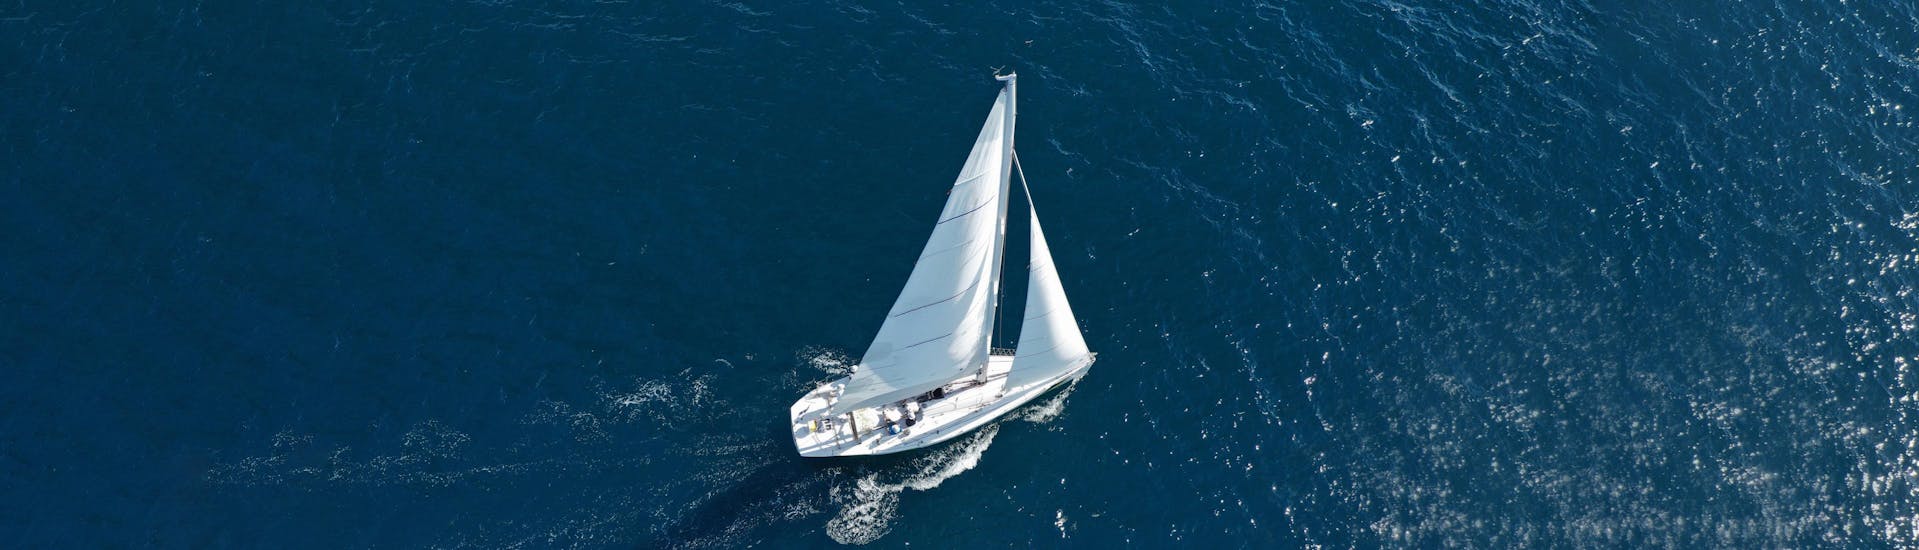 Disfruta de un paseo en barco de vela y deja que el viento te lleve a unos lugares unicos